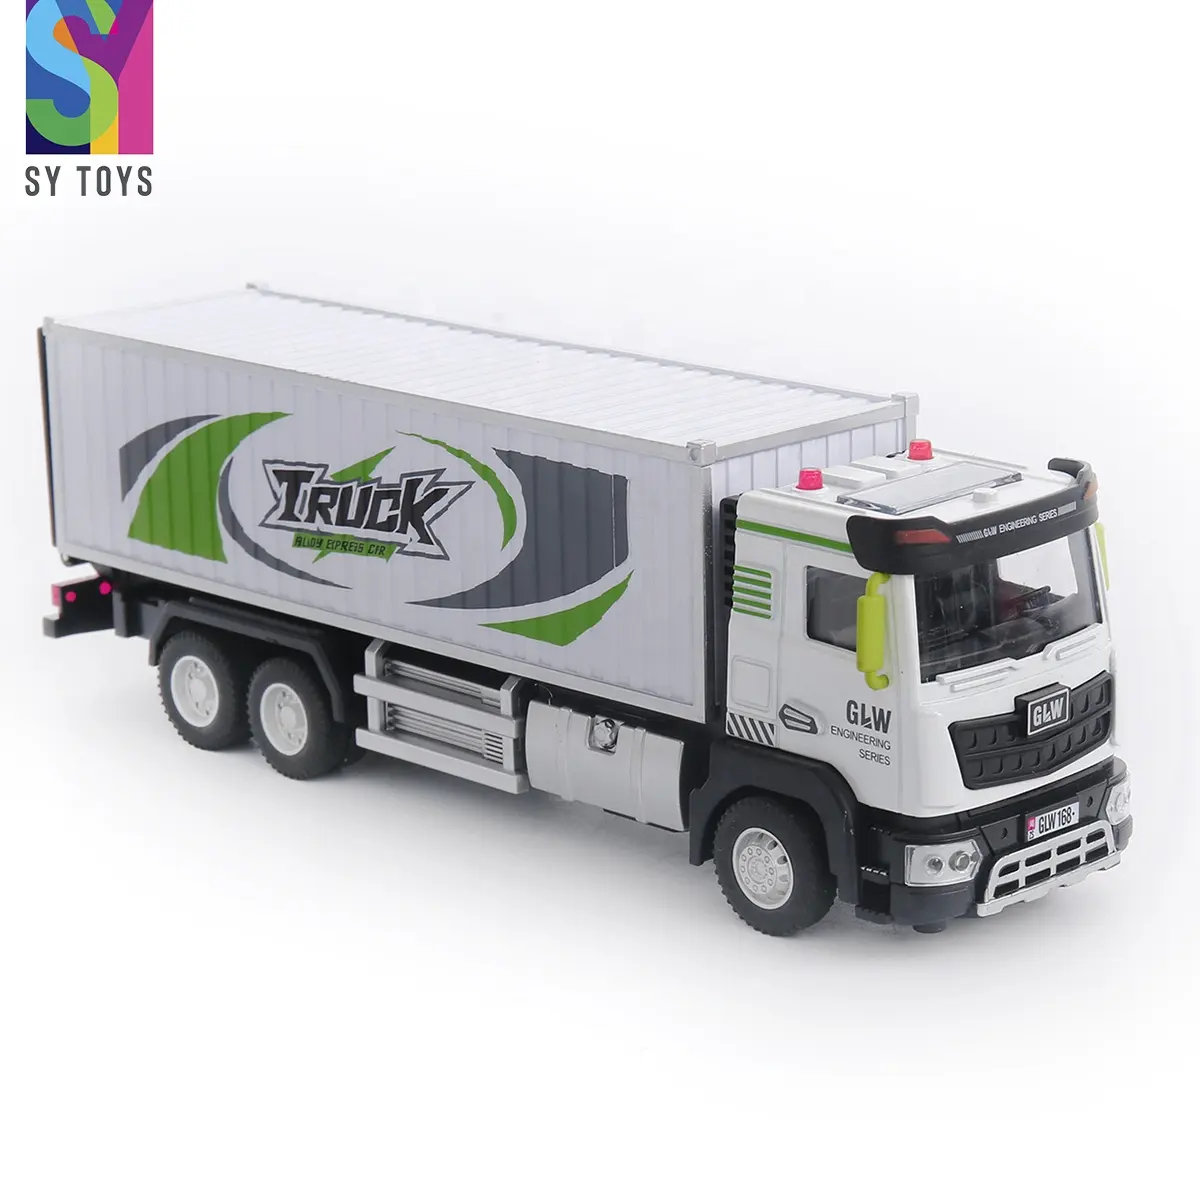 SY oyuncaklar sıcak satış çocuklar 1:40 ölçekli geri çekin araç simülasyon konteyner taşıma araba Diecast Model alaşım kamyon oyuncak